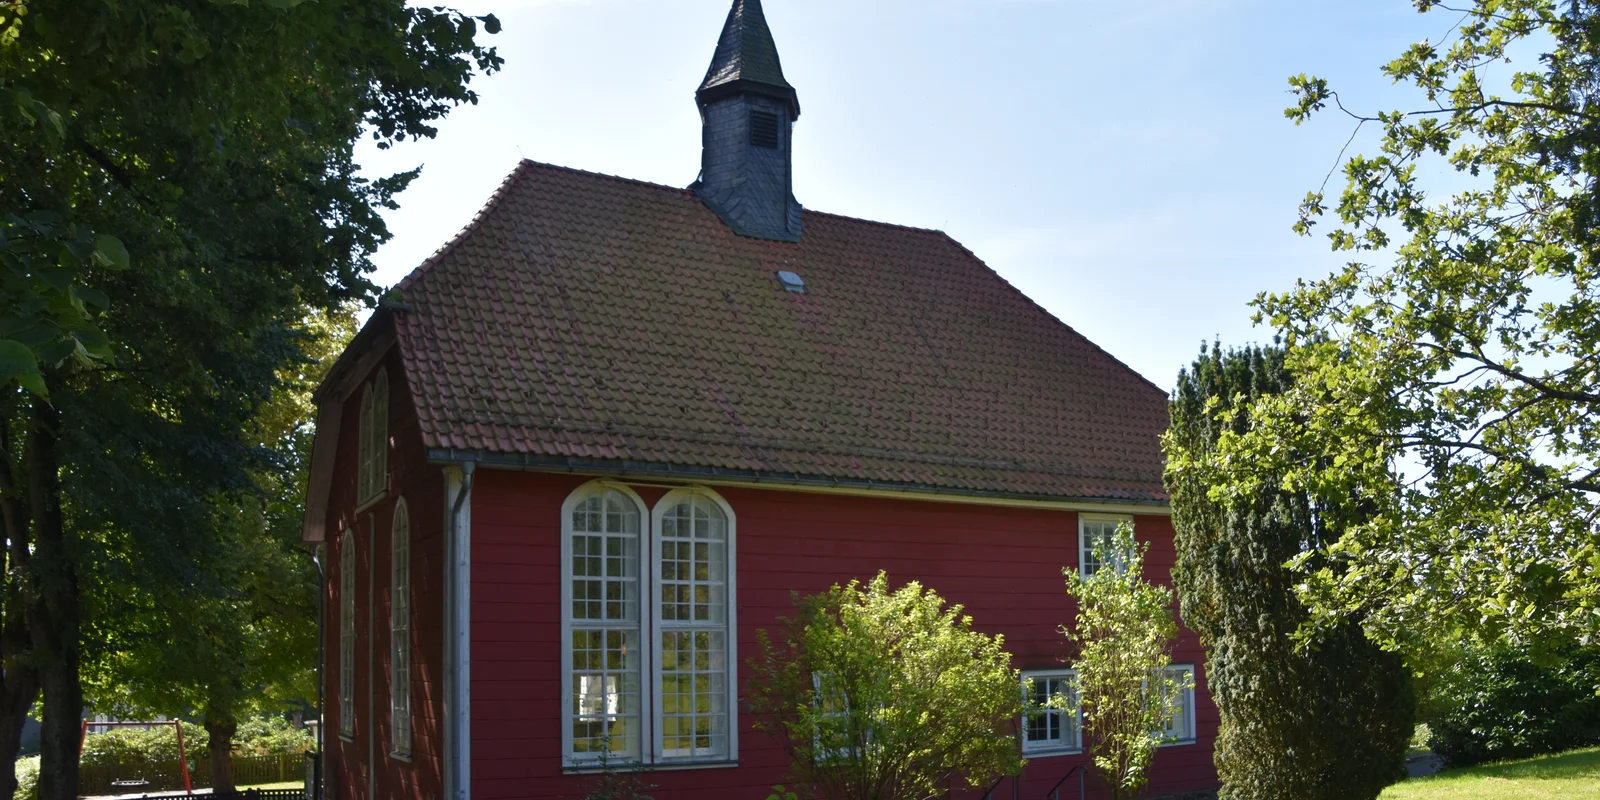 Dorfkirche Buntenbock: Rote Holzfassade mit weißen Fenstern und dunkel gedecktem Dach